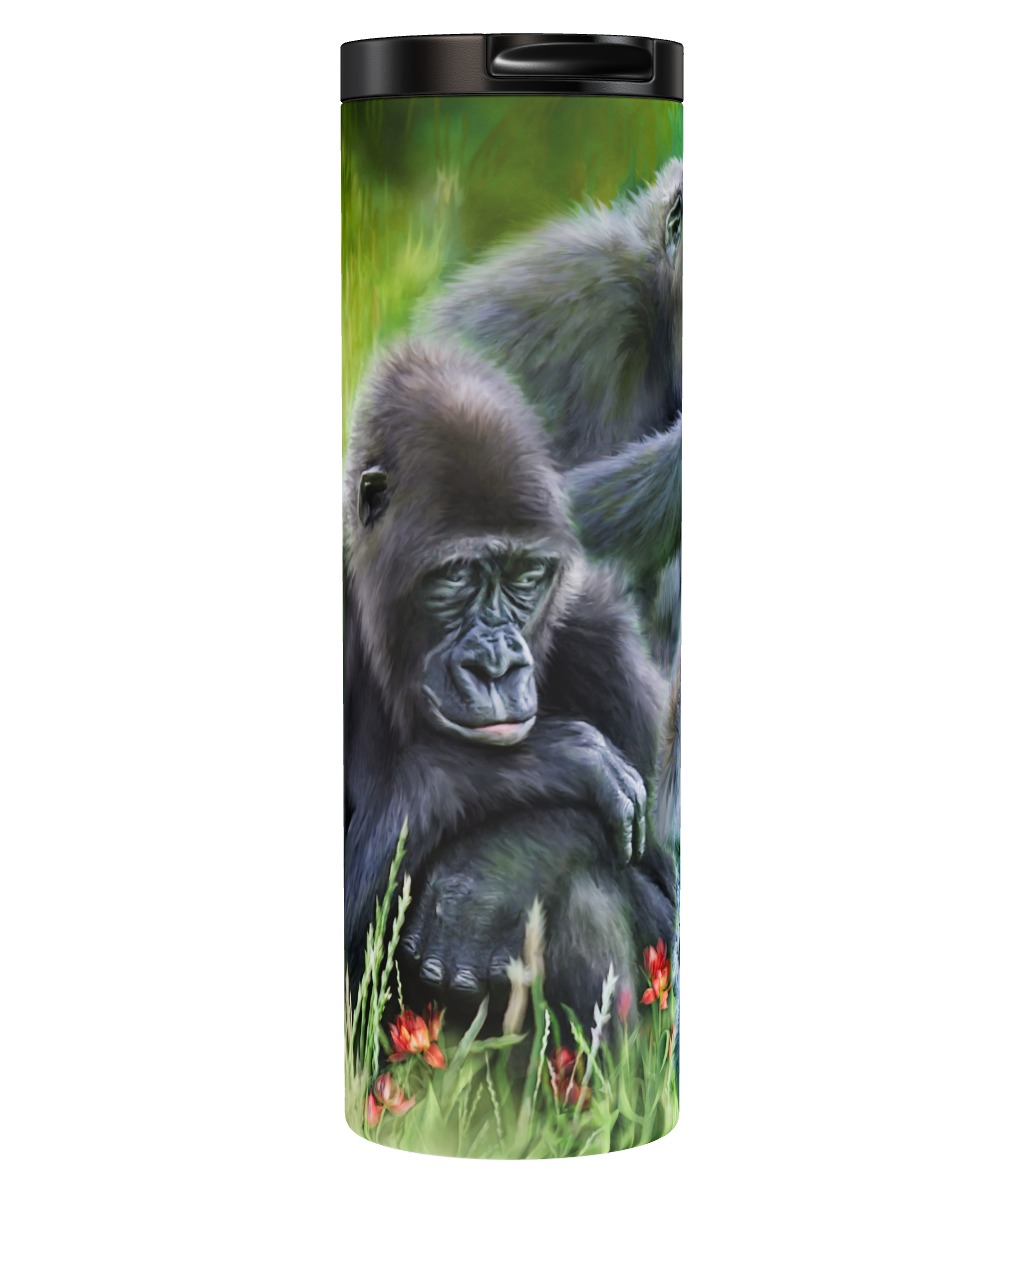 Ape Moods - Gorilla Tumbler